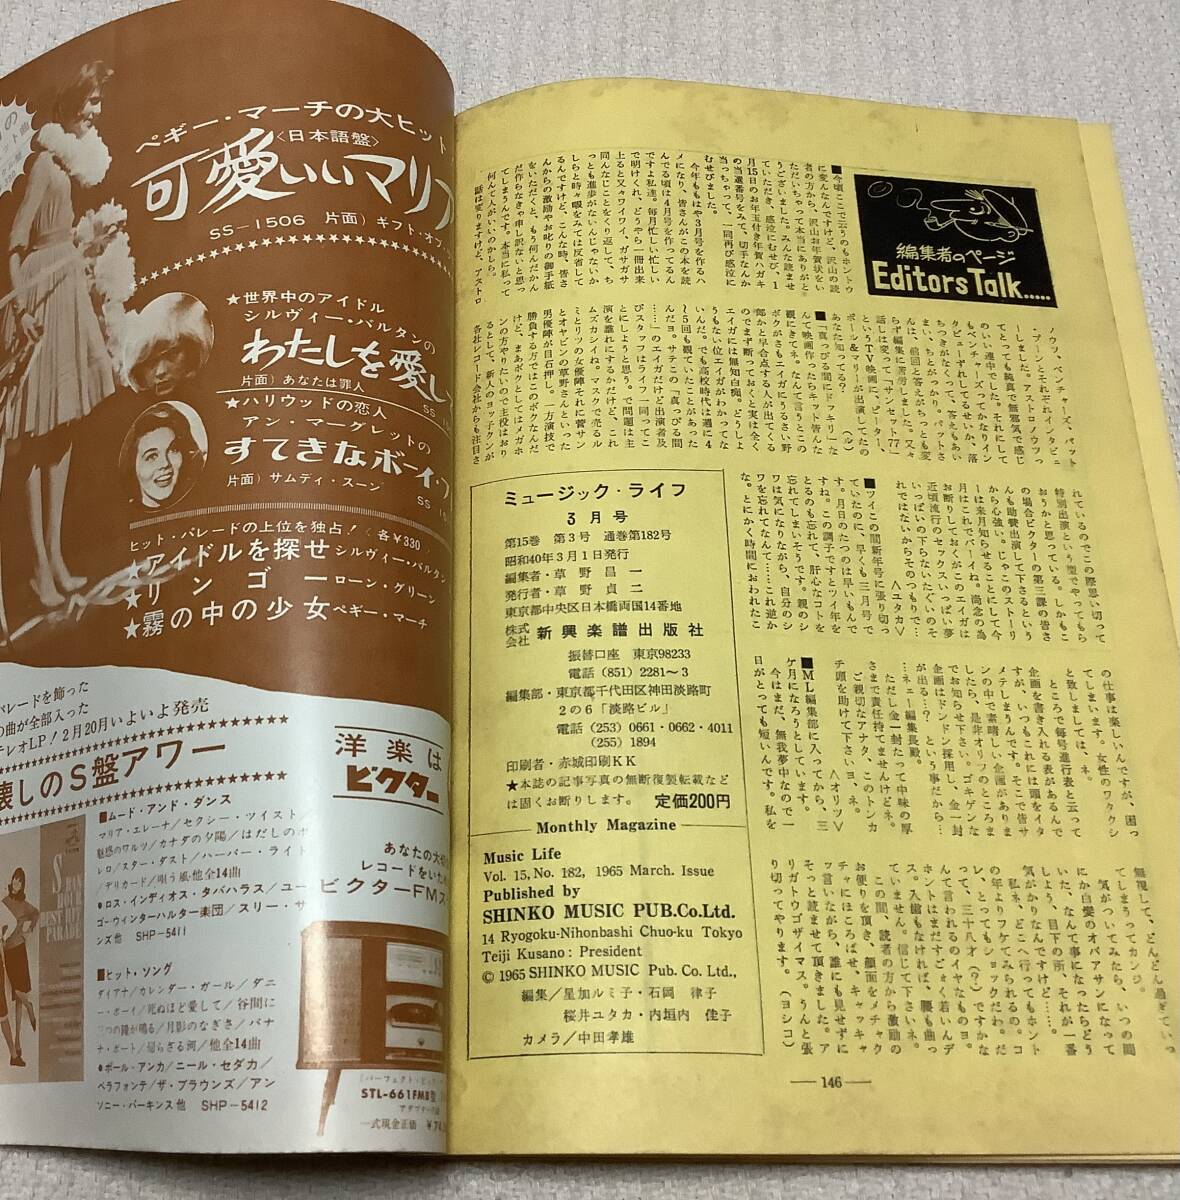 ポピュラー・ミュージックの雑誌 ミュージック・ライフ 1965年3月号 music life 昭和40 古本 雑誌 ビートルズの画像5